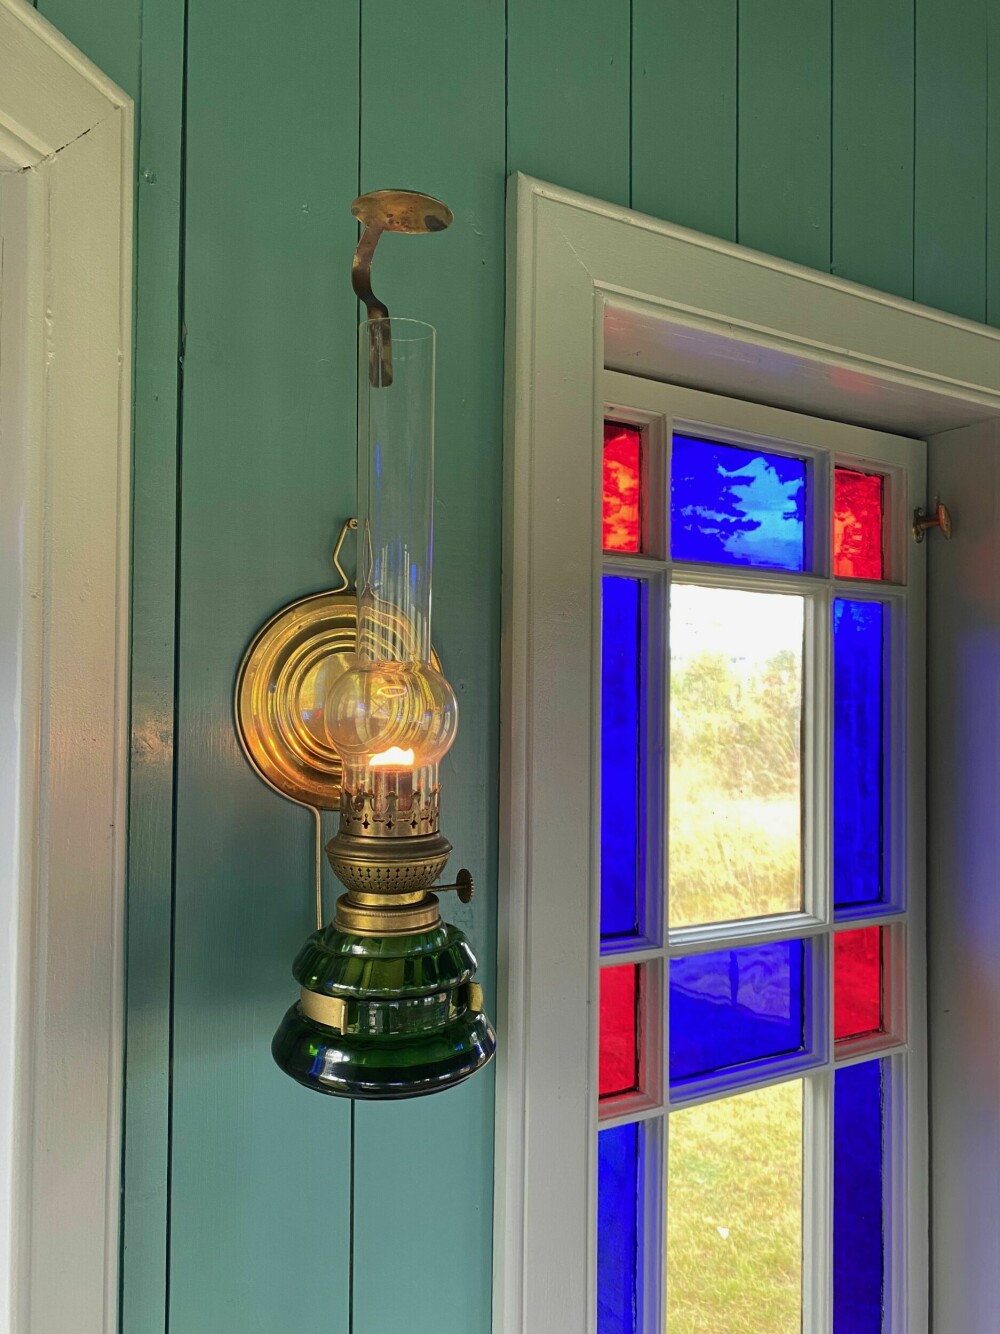 PARAFINLAMPE: En vakker og enkel vegghengt parafinlampe. Disse fantes det mange av rundt om i norske hjem. De ble stort sett produsert i gjennomsiktig glass, eller i grønt som her. De fantes også i porselen. Denne er helt komplett med den lille sotfangeren i toppen av glasset.